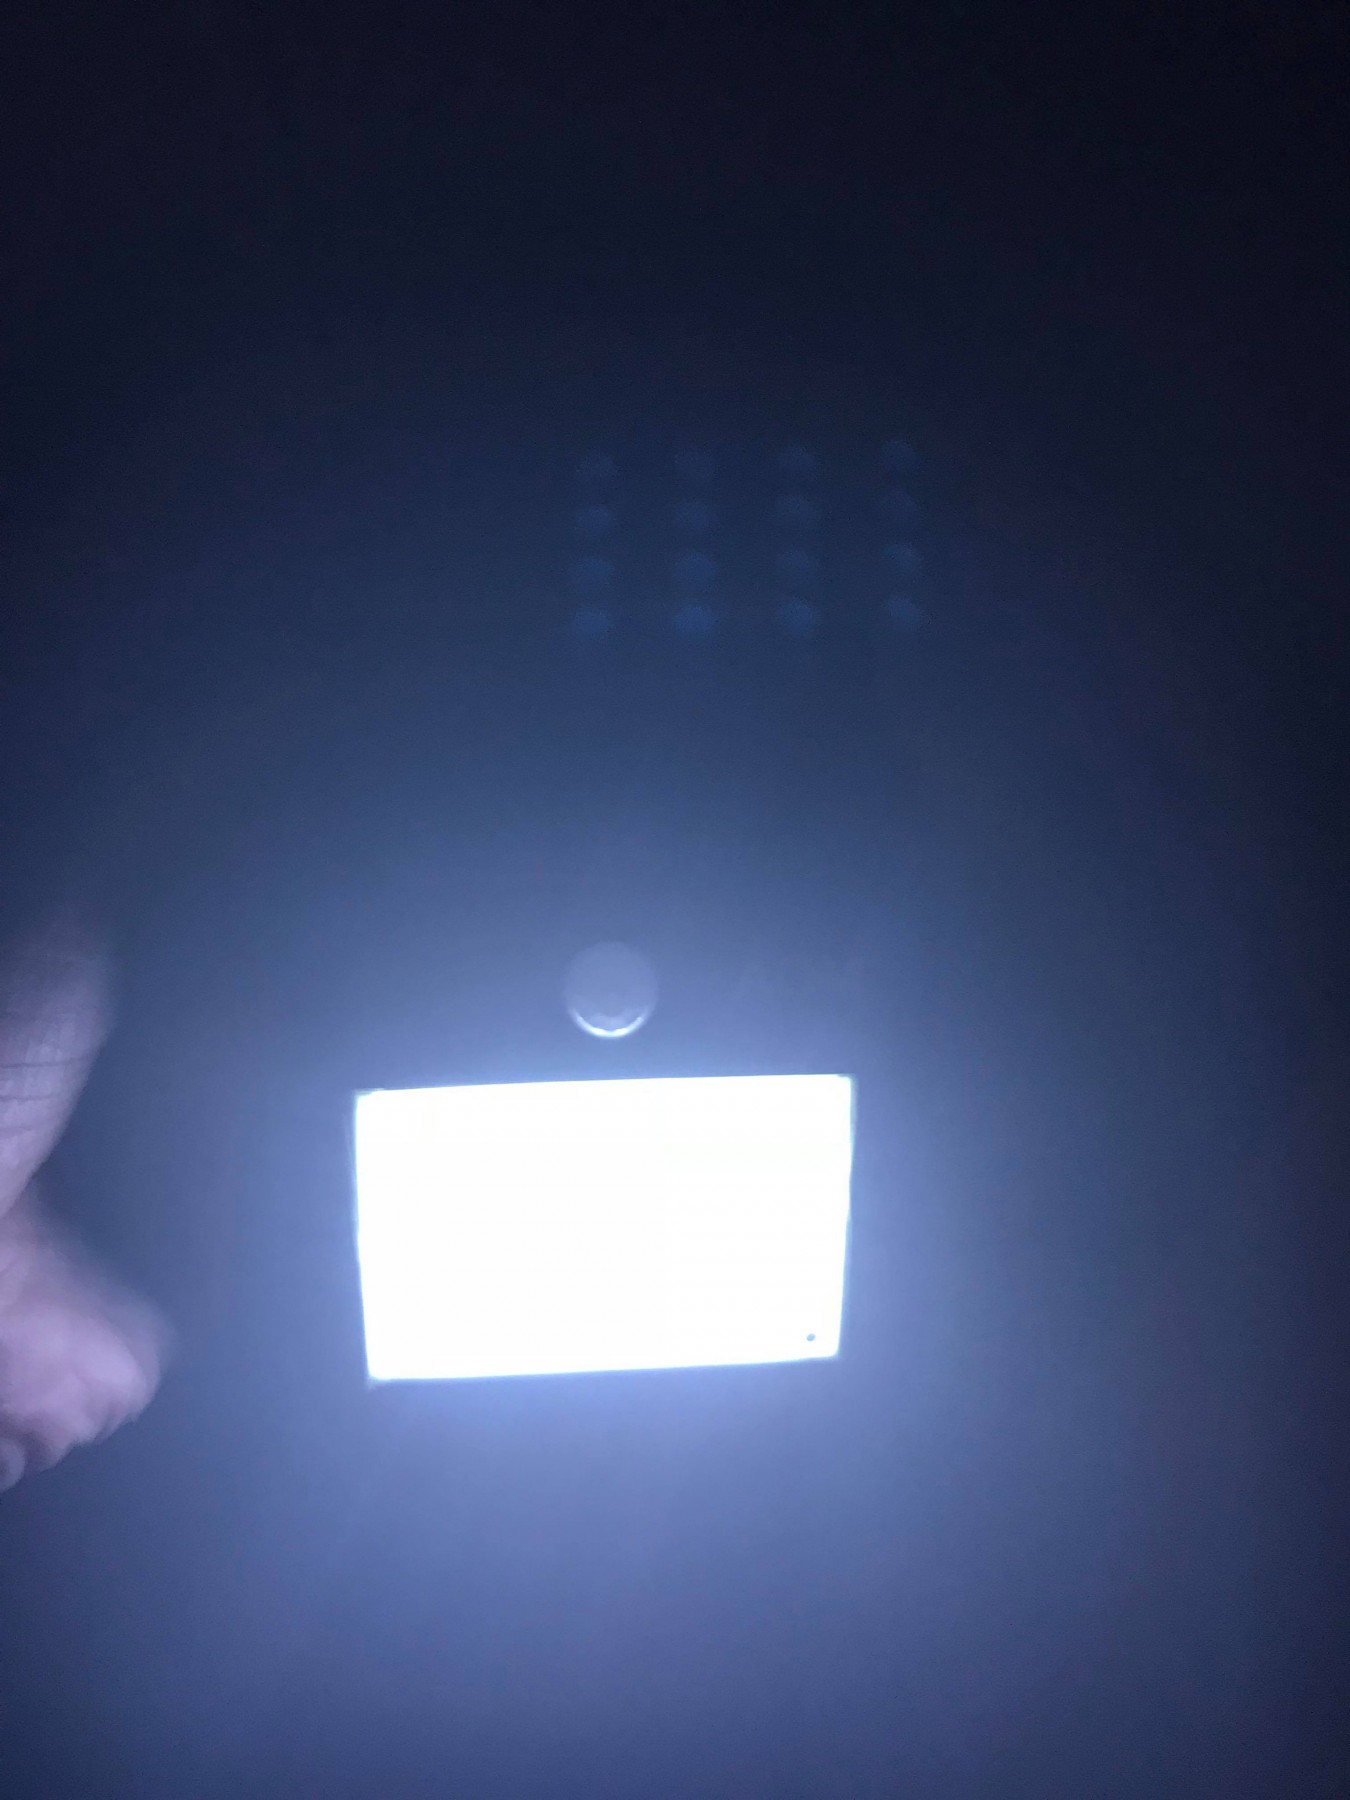 Luz suficiente y genial el sensor de luz y movimiento para que solo se encienda de noche y al detectar a una persona